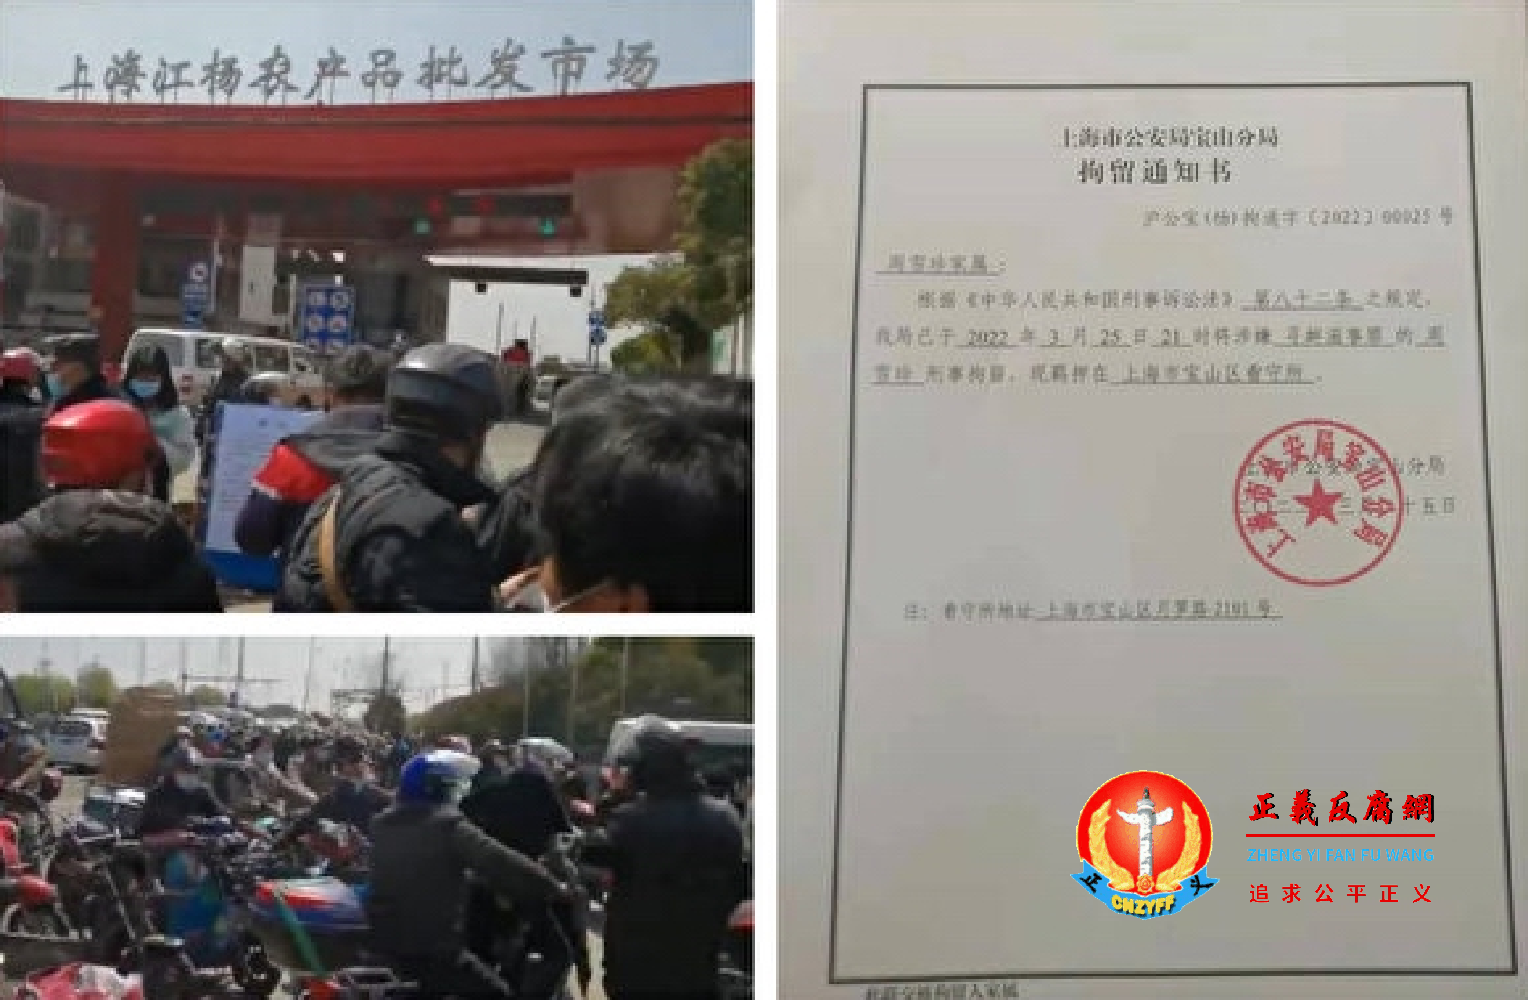 上海访民周雪珍因拍录买菜视频被“寻衅滋事罪”刑拘。.png